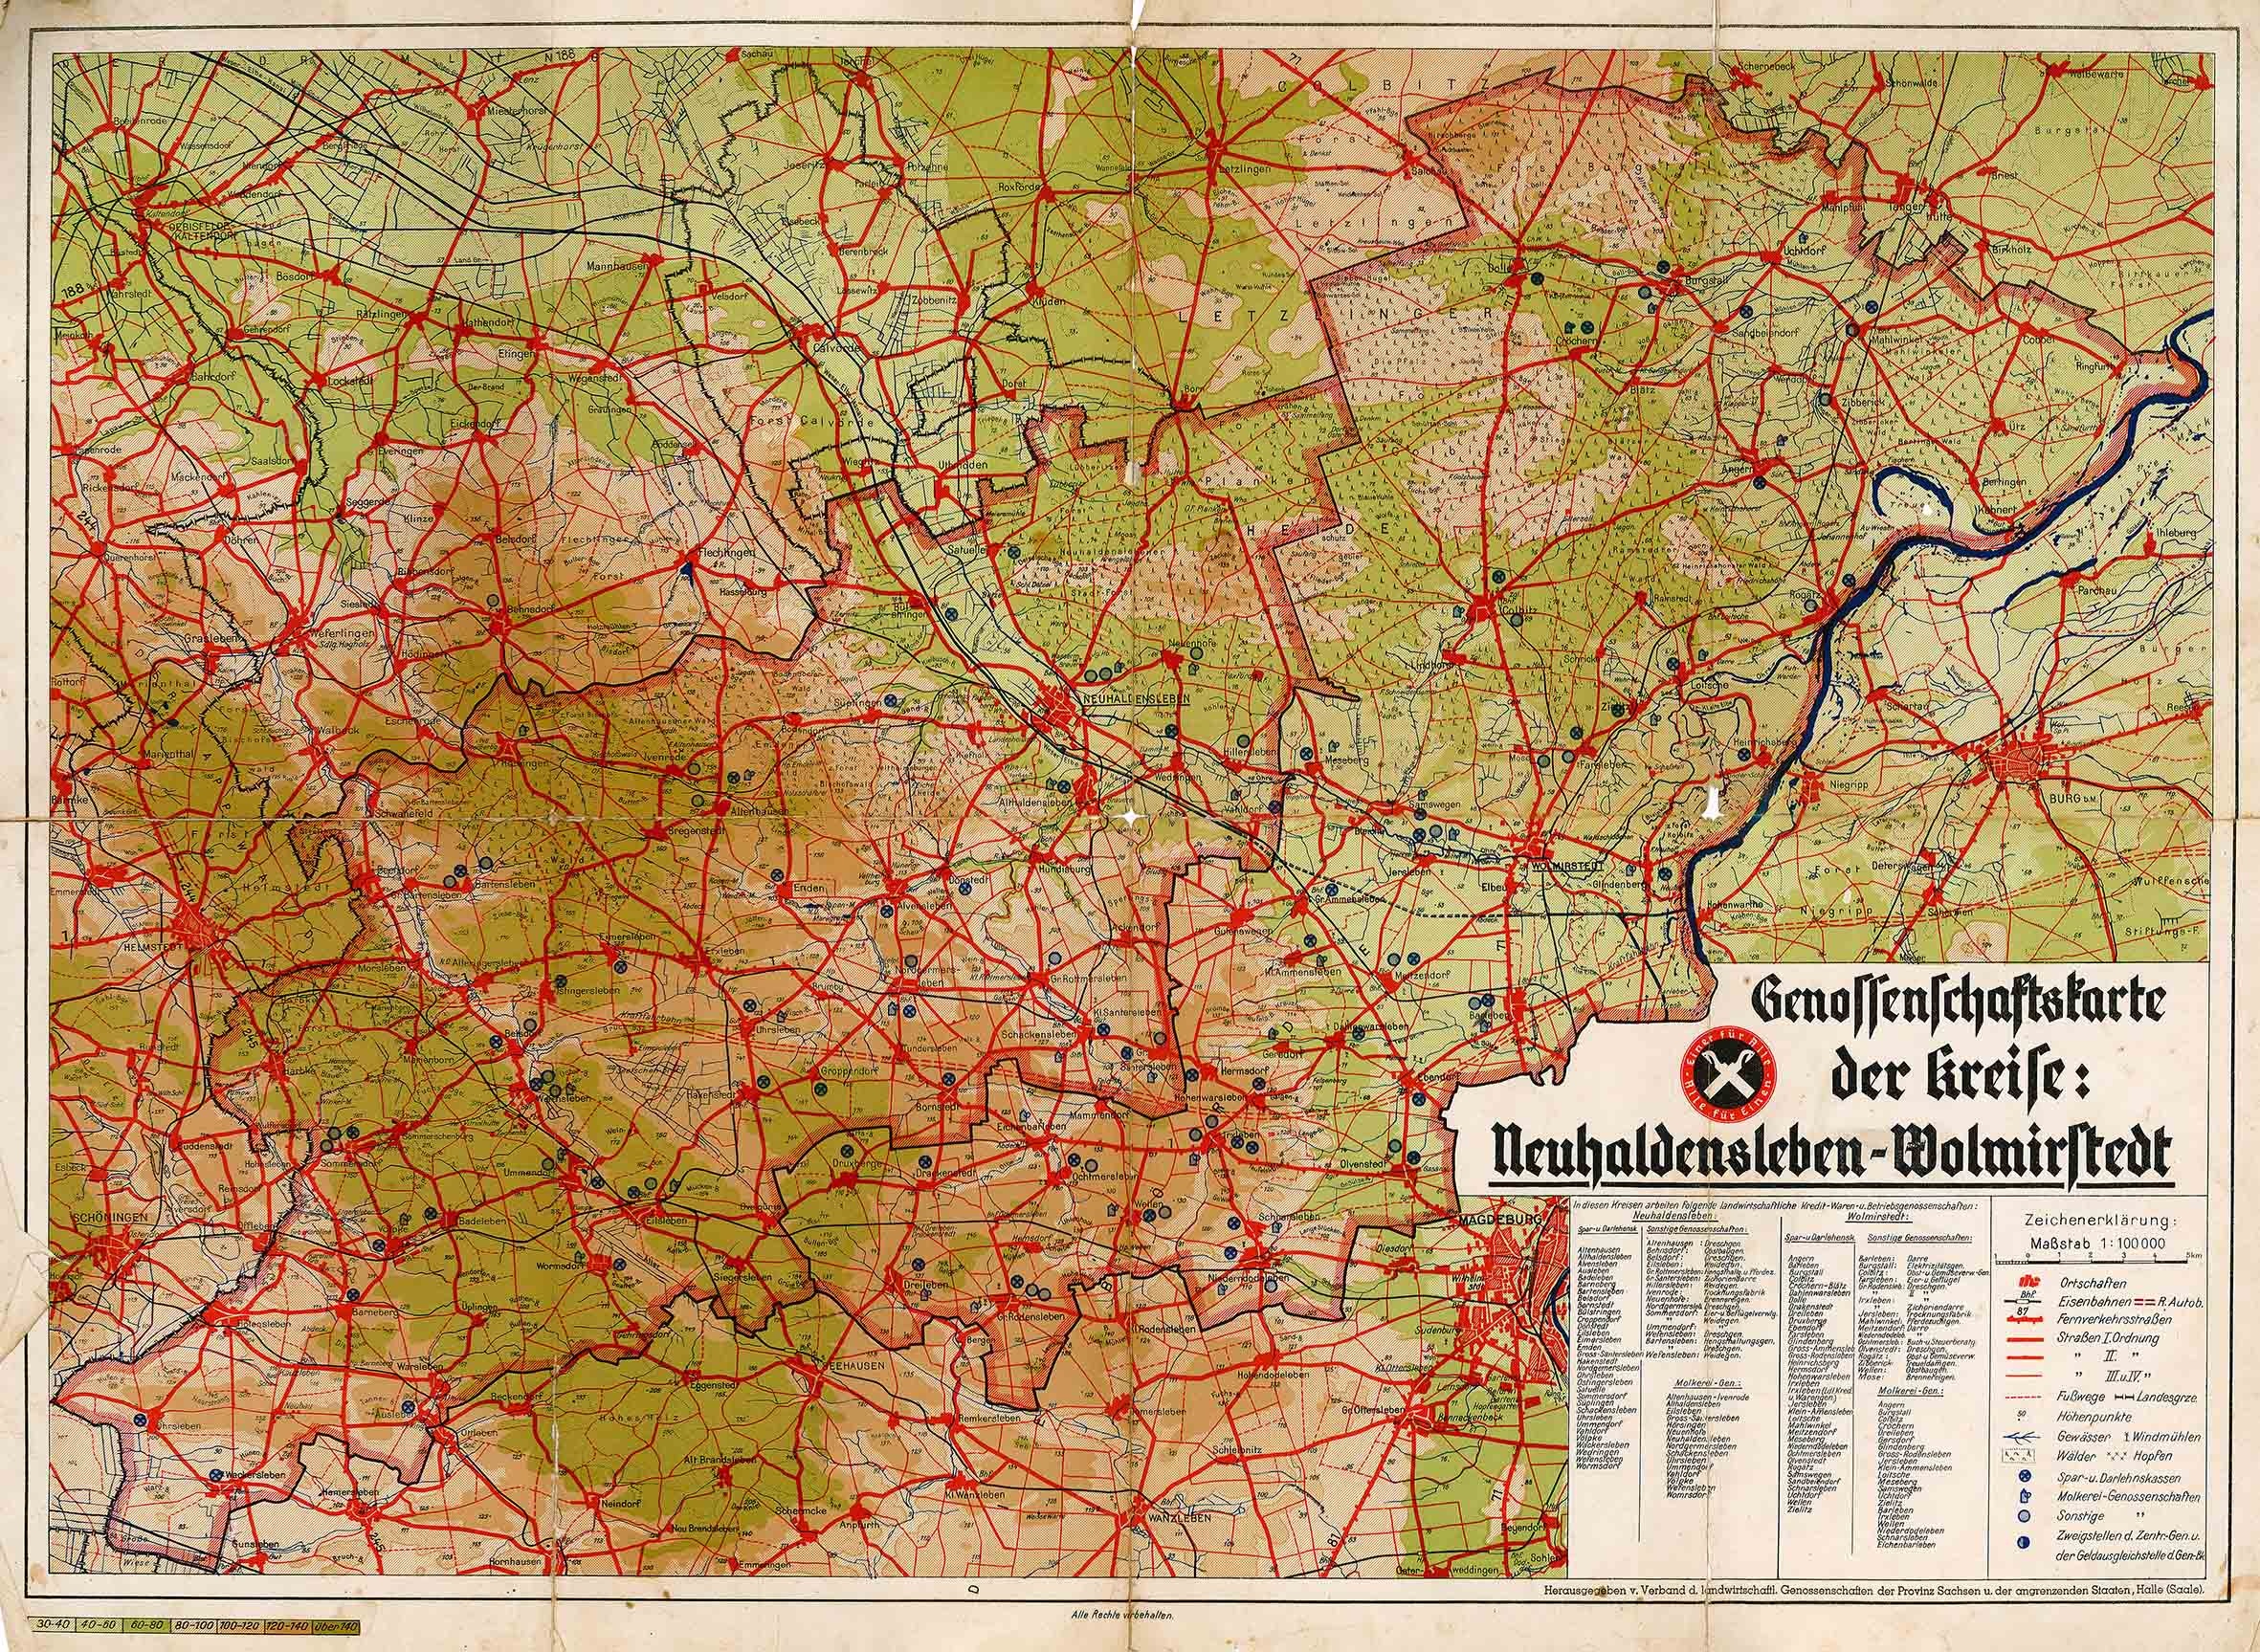 Genossenschaftskarte der Kreise Neuhaldensleben-Wolmirstedt (Museum Wolmirstedt RR-F)